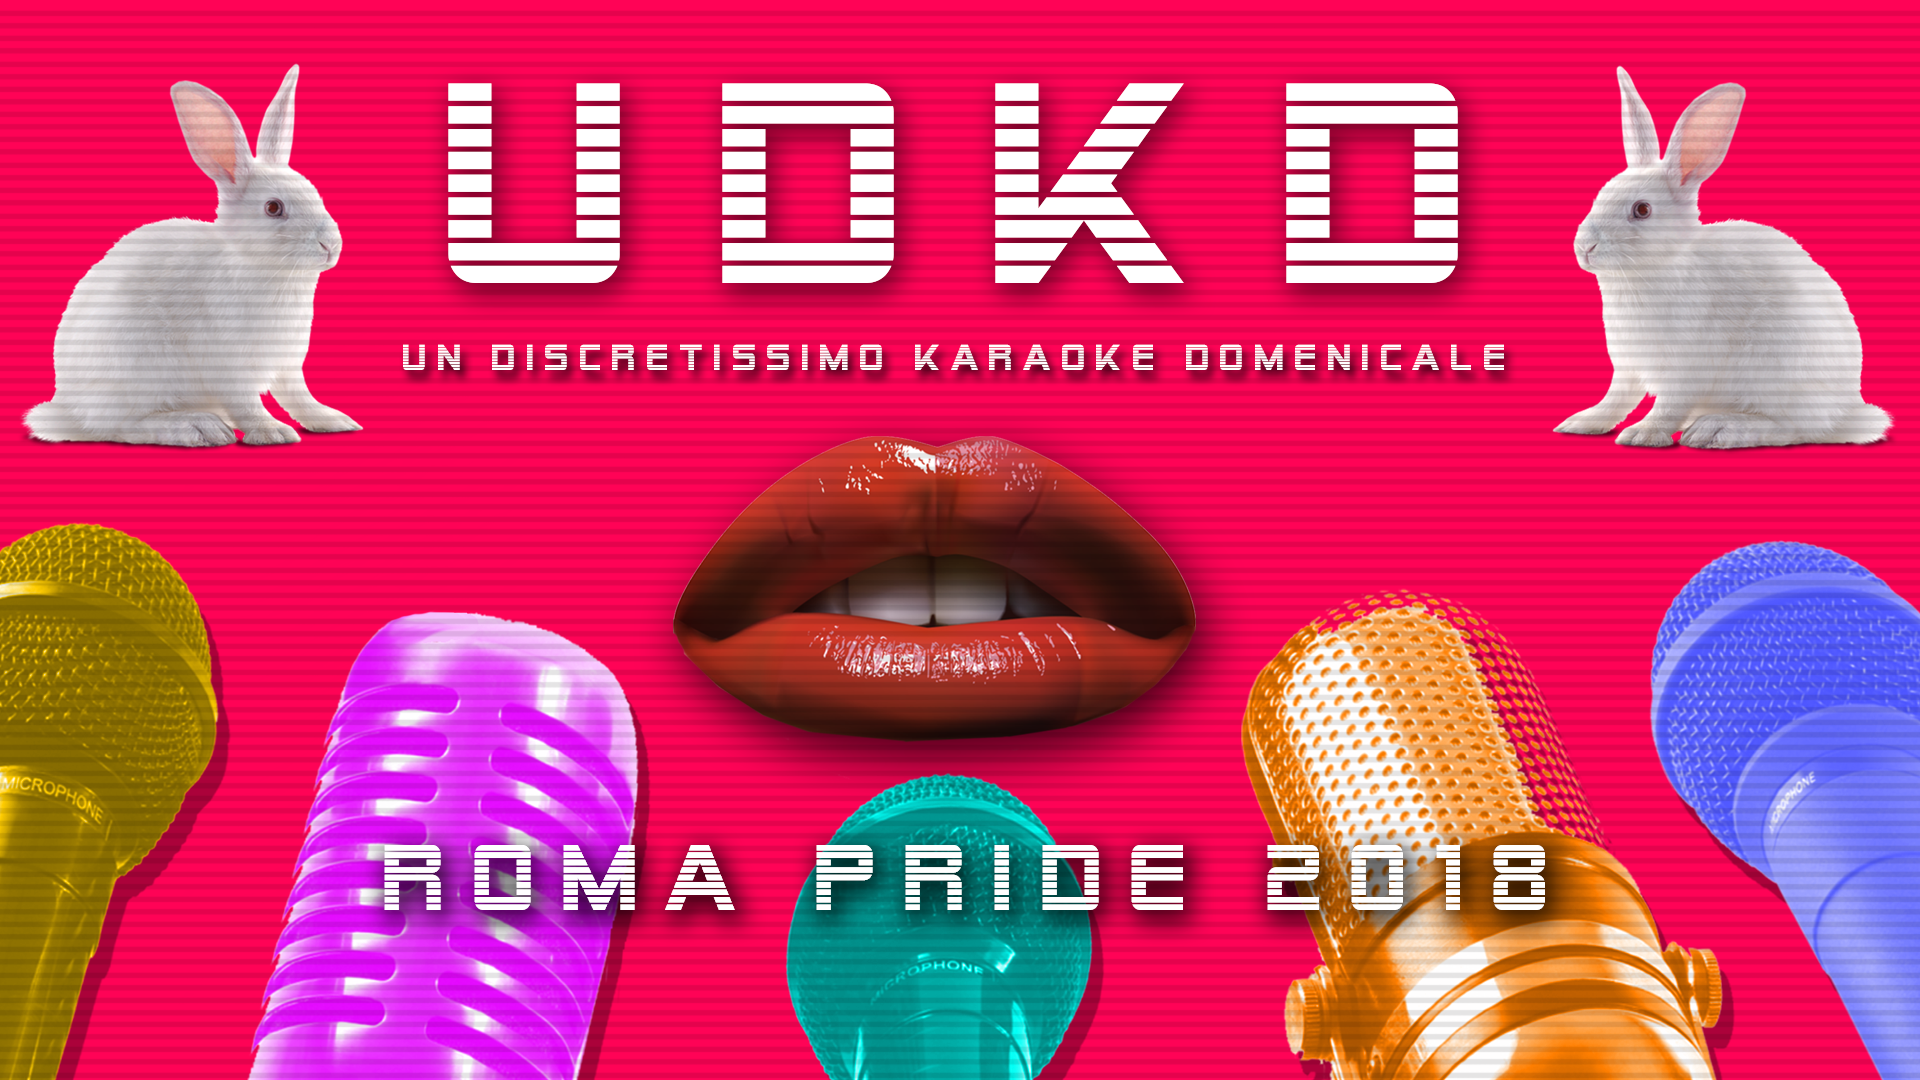 UDKD Un Discretissimo Karaoke Domenicale Roma Pride 2018